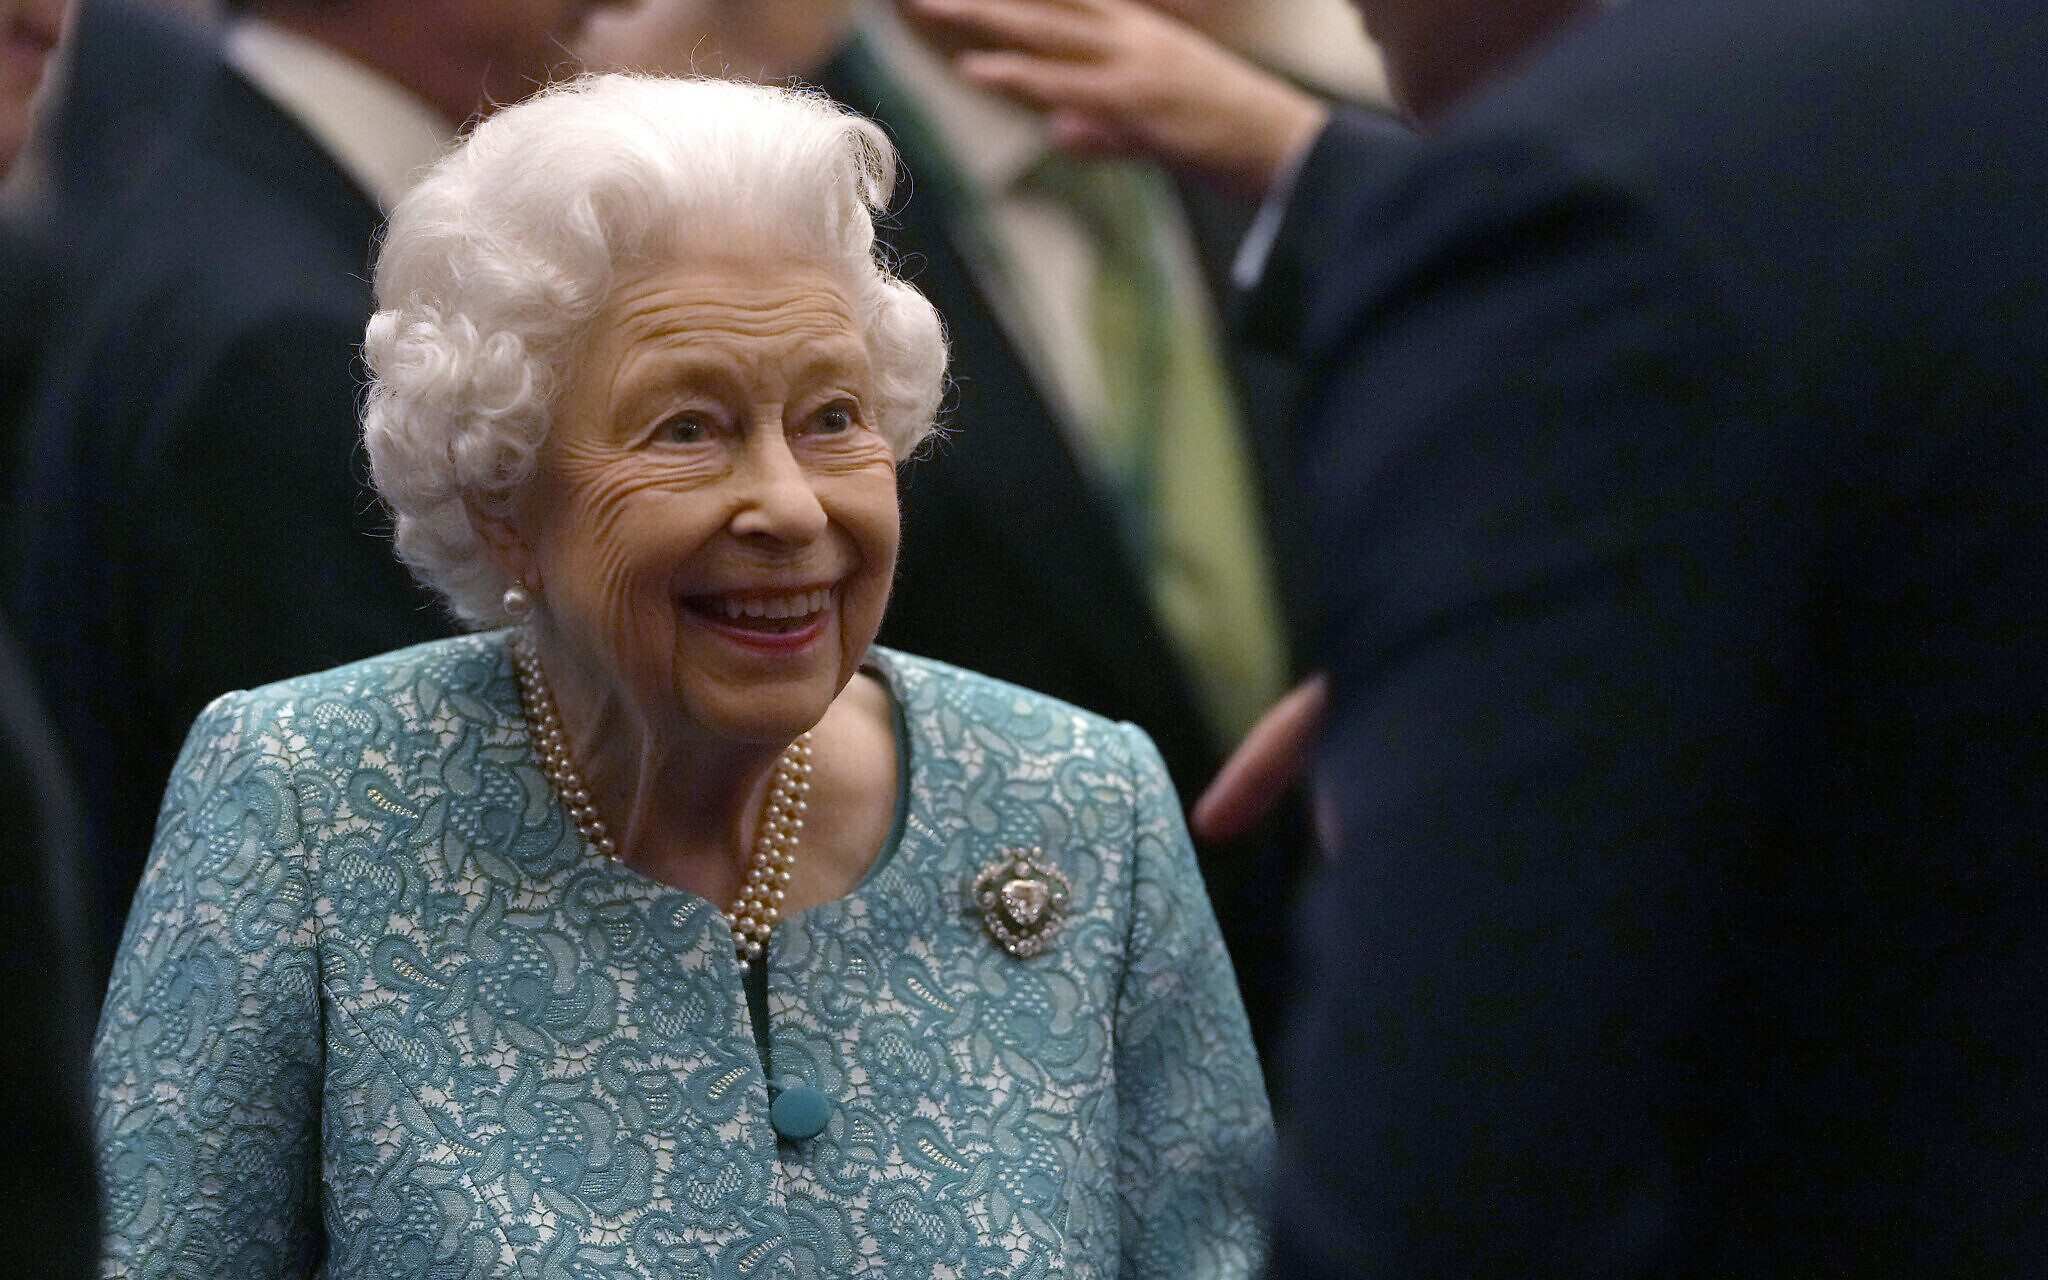 Ολόκληρη η ζωή της βασίλισσας Ελισάβετ σε ένα timelapse βίντεο λίγων δευτερολέπτων